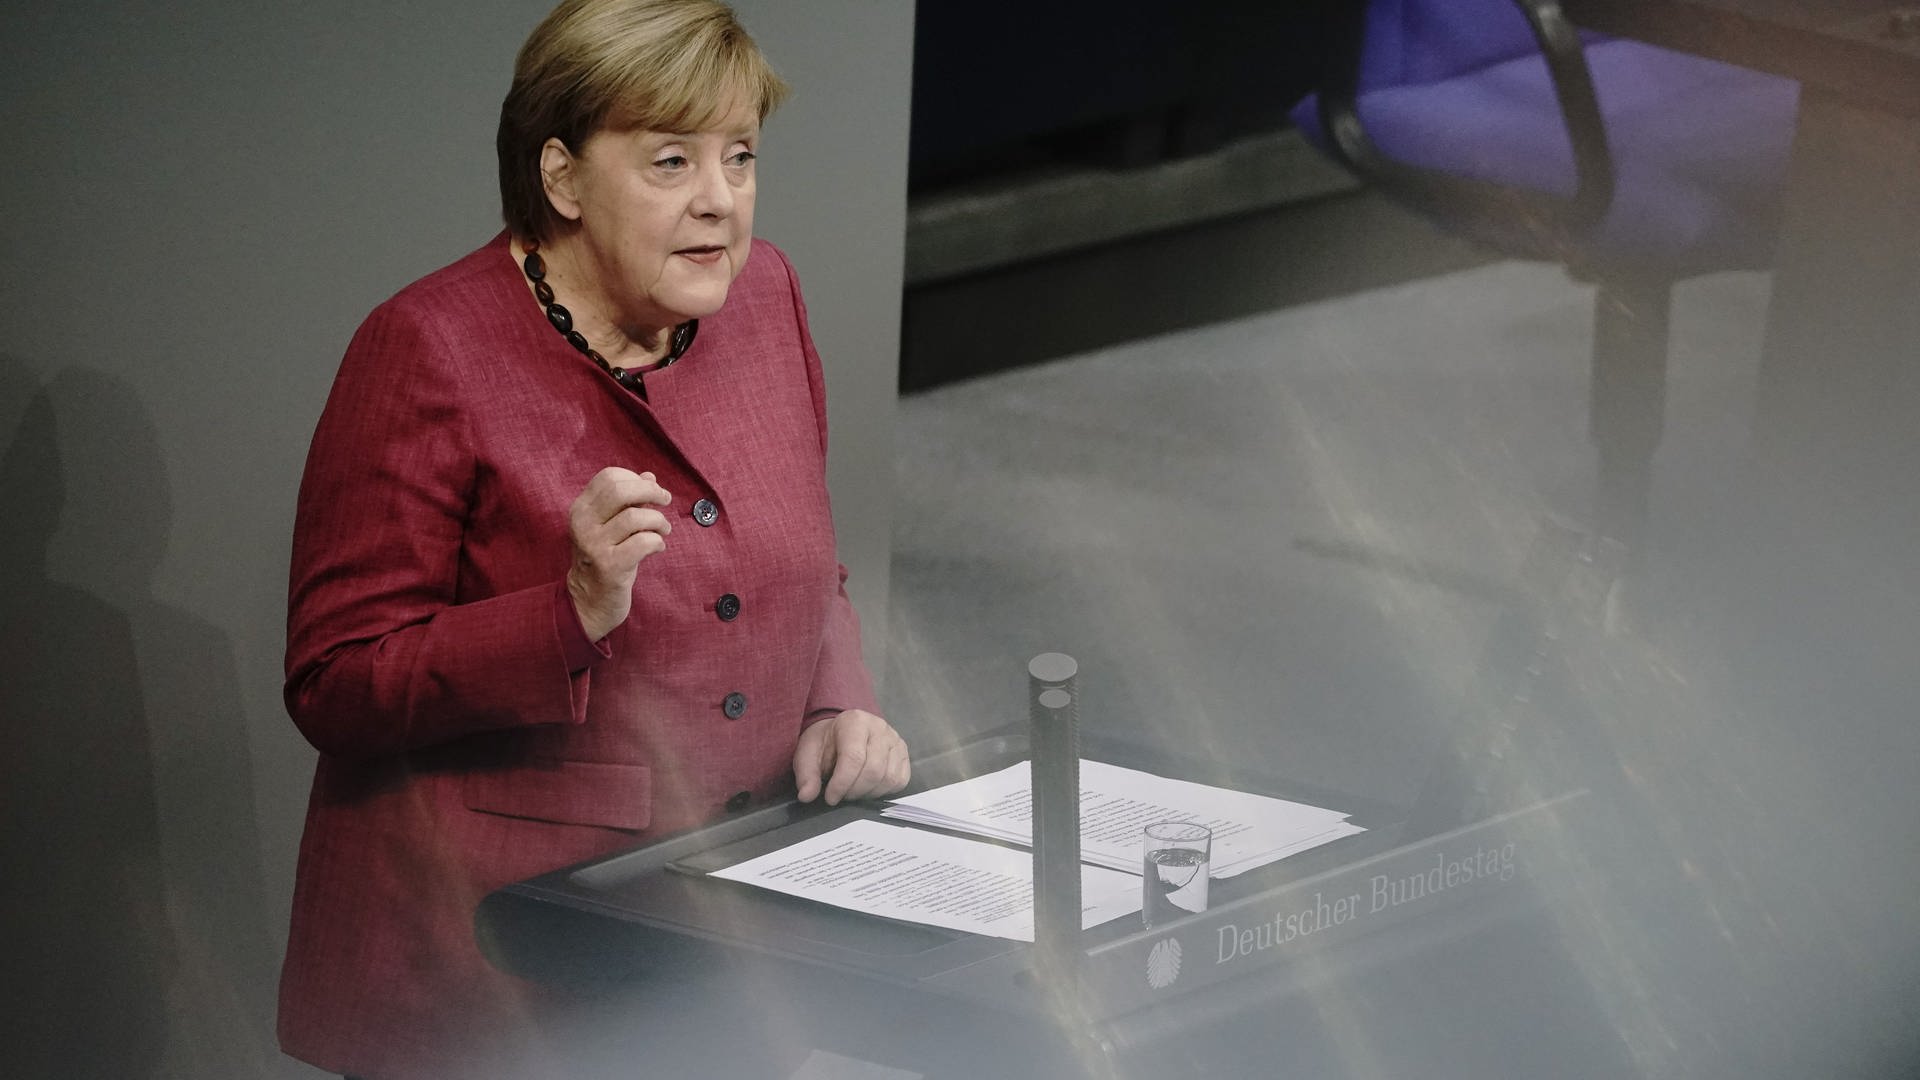 Bundeskanzlerin Angela Merkel gibt im Bundestag eine Regierungserklärung.